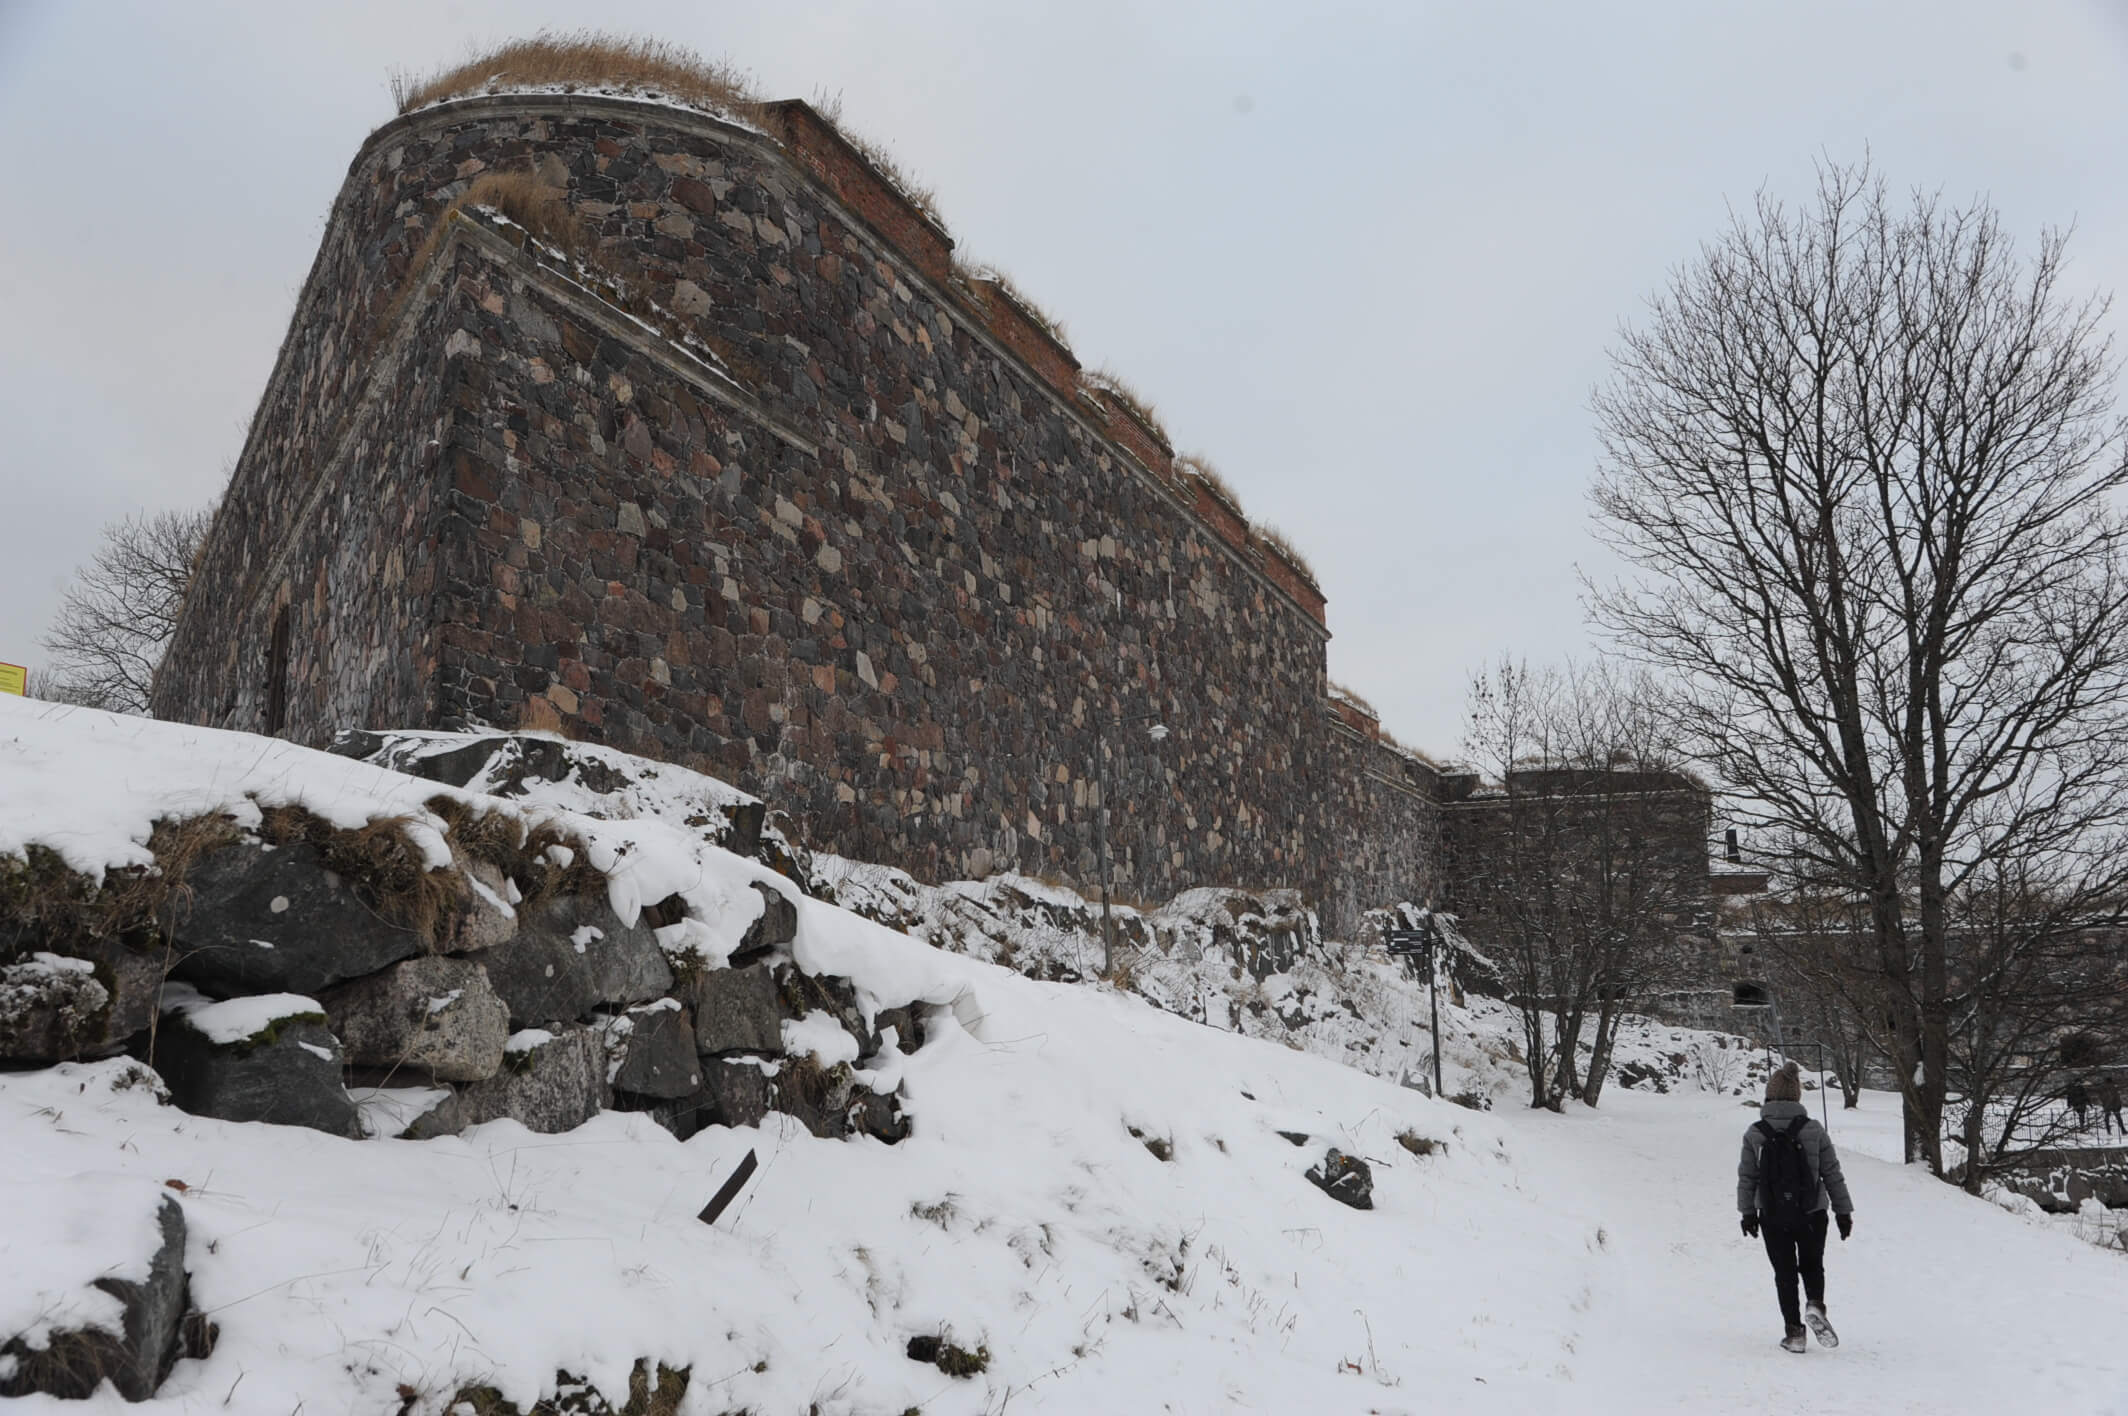 スオメンリンナの要塞。石造りの堤防を見ることができる